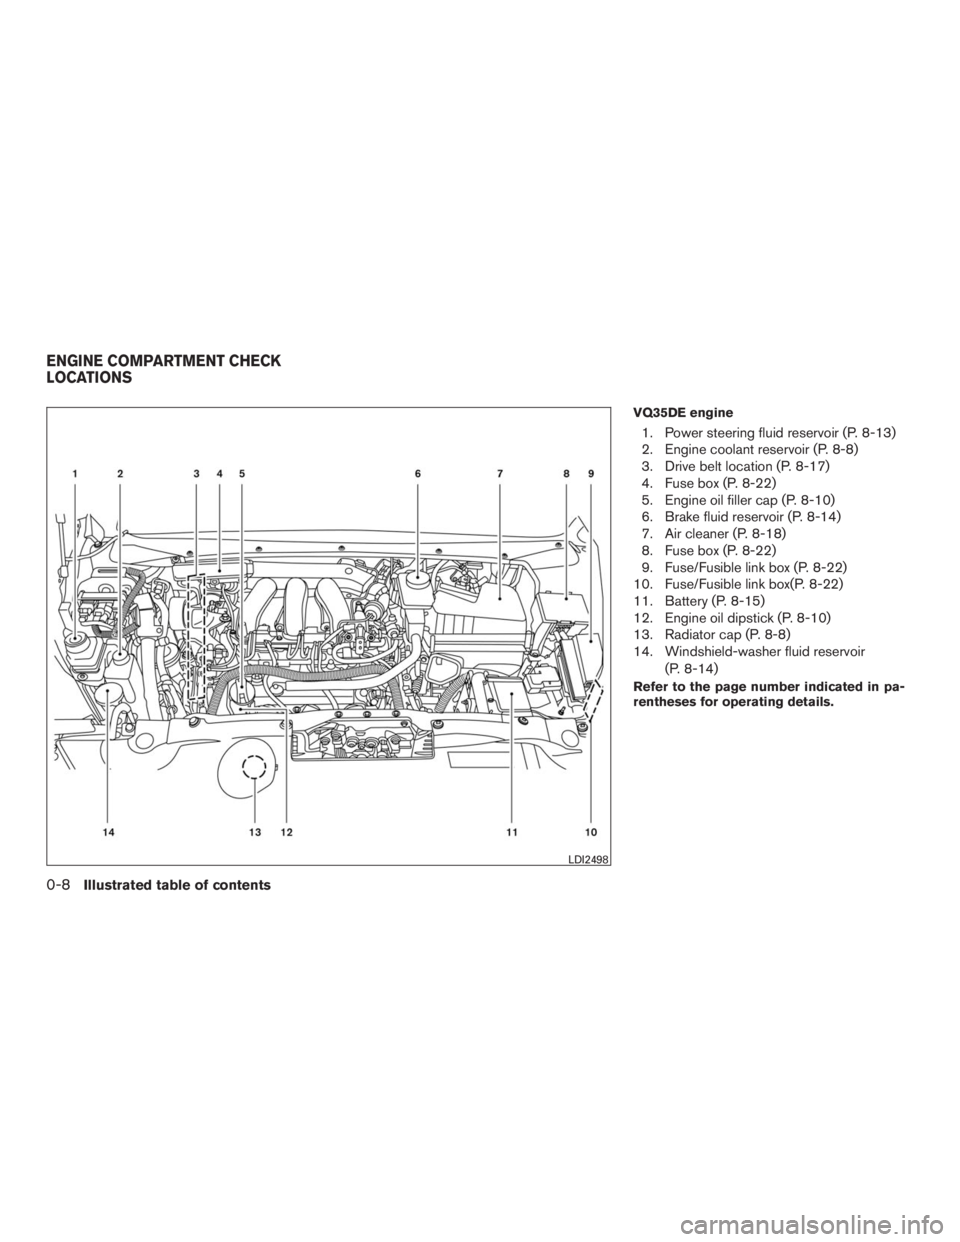 INFINITI QX60 2016  Owners Manual VQ35DE engine
1. Power steering fluid reservoir (P. 8-13)
2. Engine coolant reservoir (P. 8-8)
3. Drive belt location (P. 8-17)
4. Fuse box (P. 8-22)
5. Engine oil filler cap (P. 8-10)
6. Brake fluid 